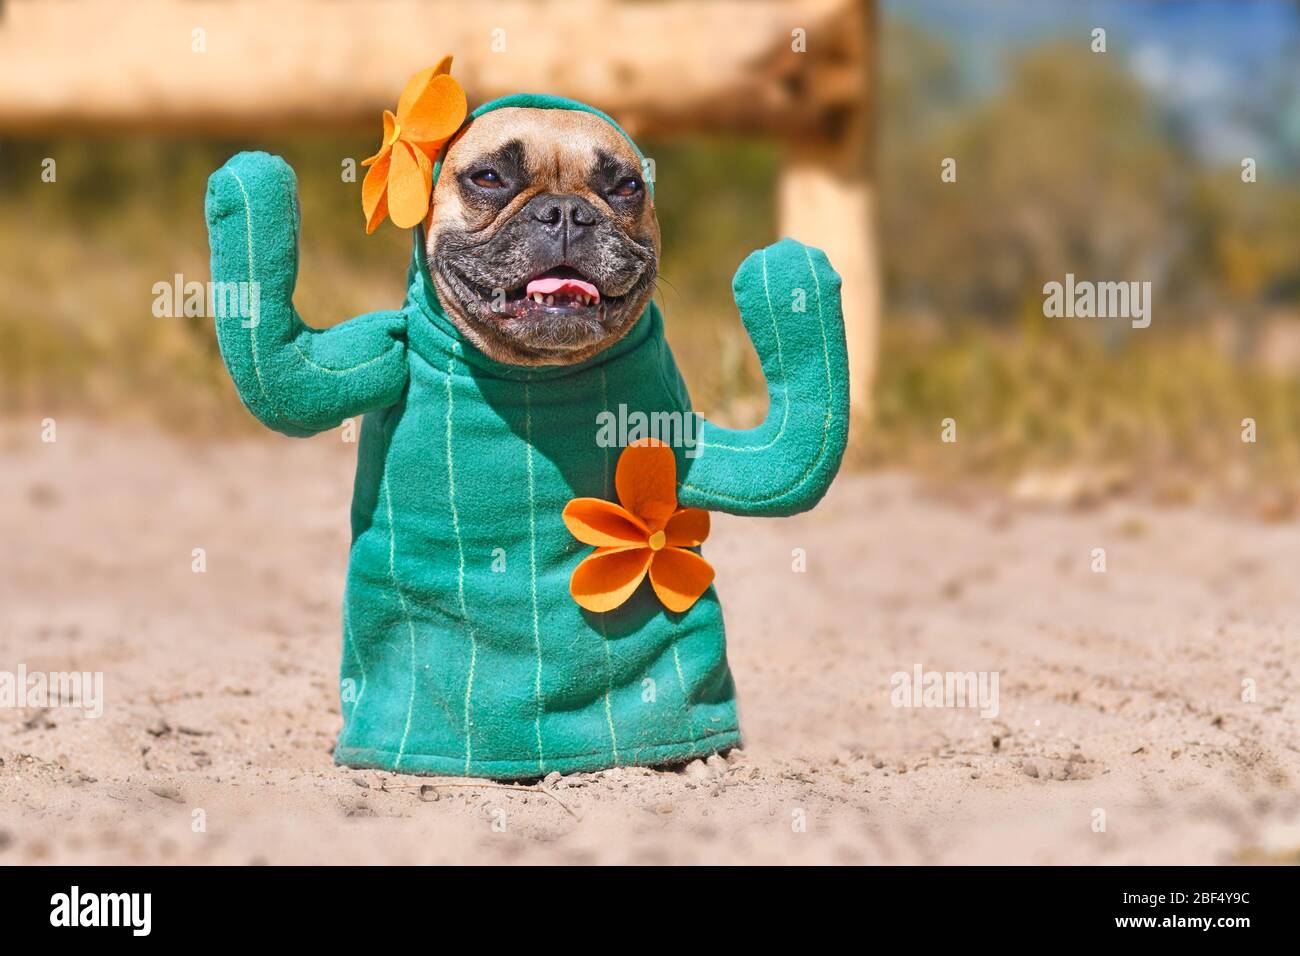 Lustige französische Bulldogge Hund verkleidet mit Kaktus Kostüm mit  gefälschten Armen und orange-Rasenmäher auf sandigen Boden stehen  Stockfotografie - Alamy